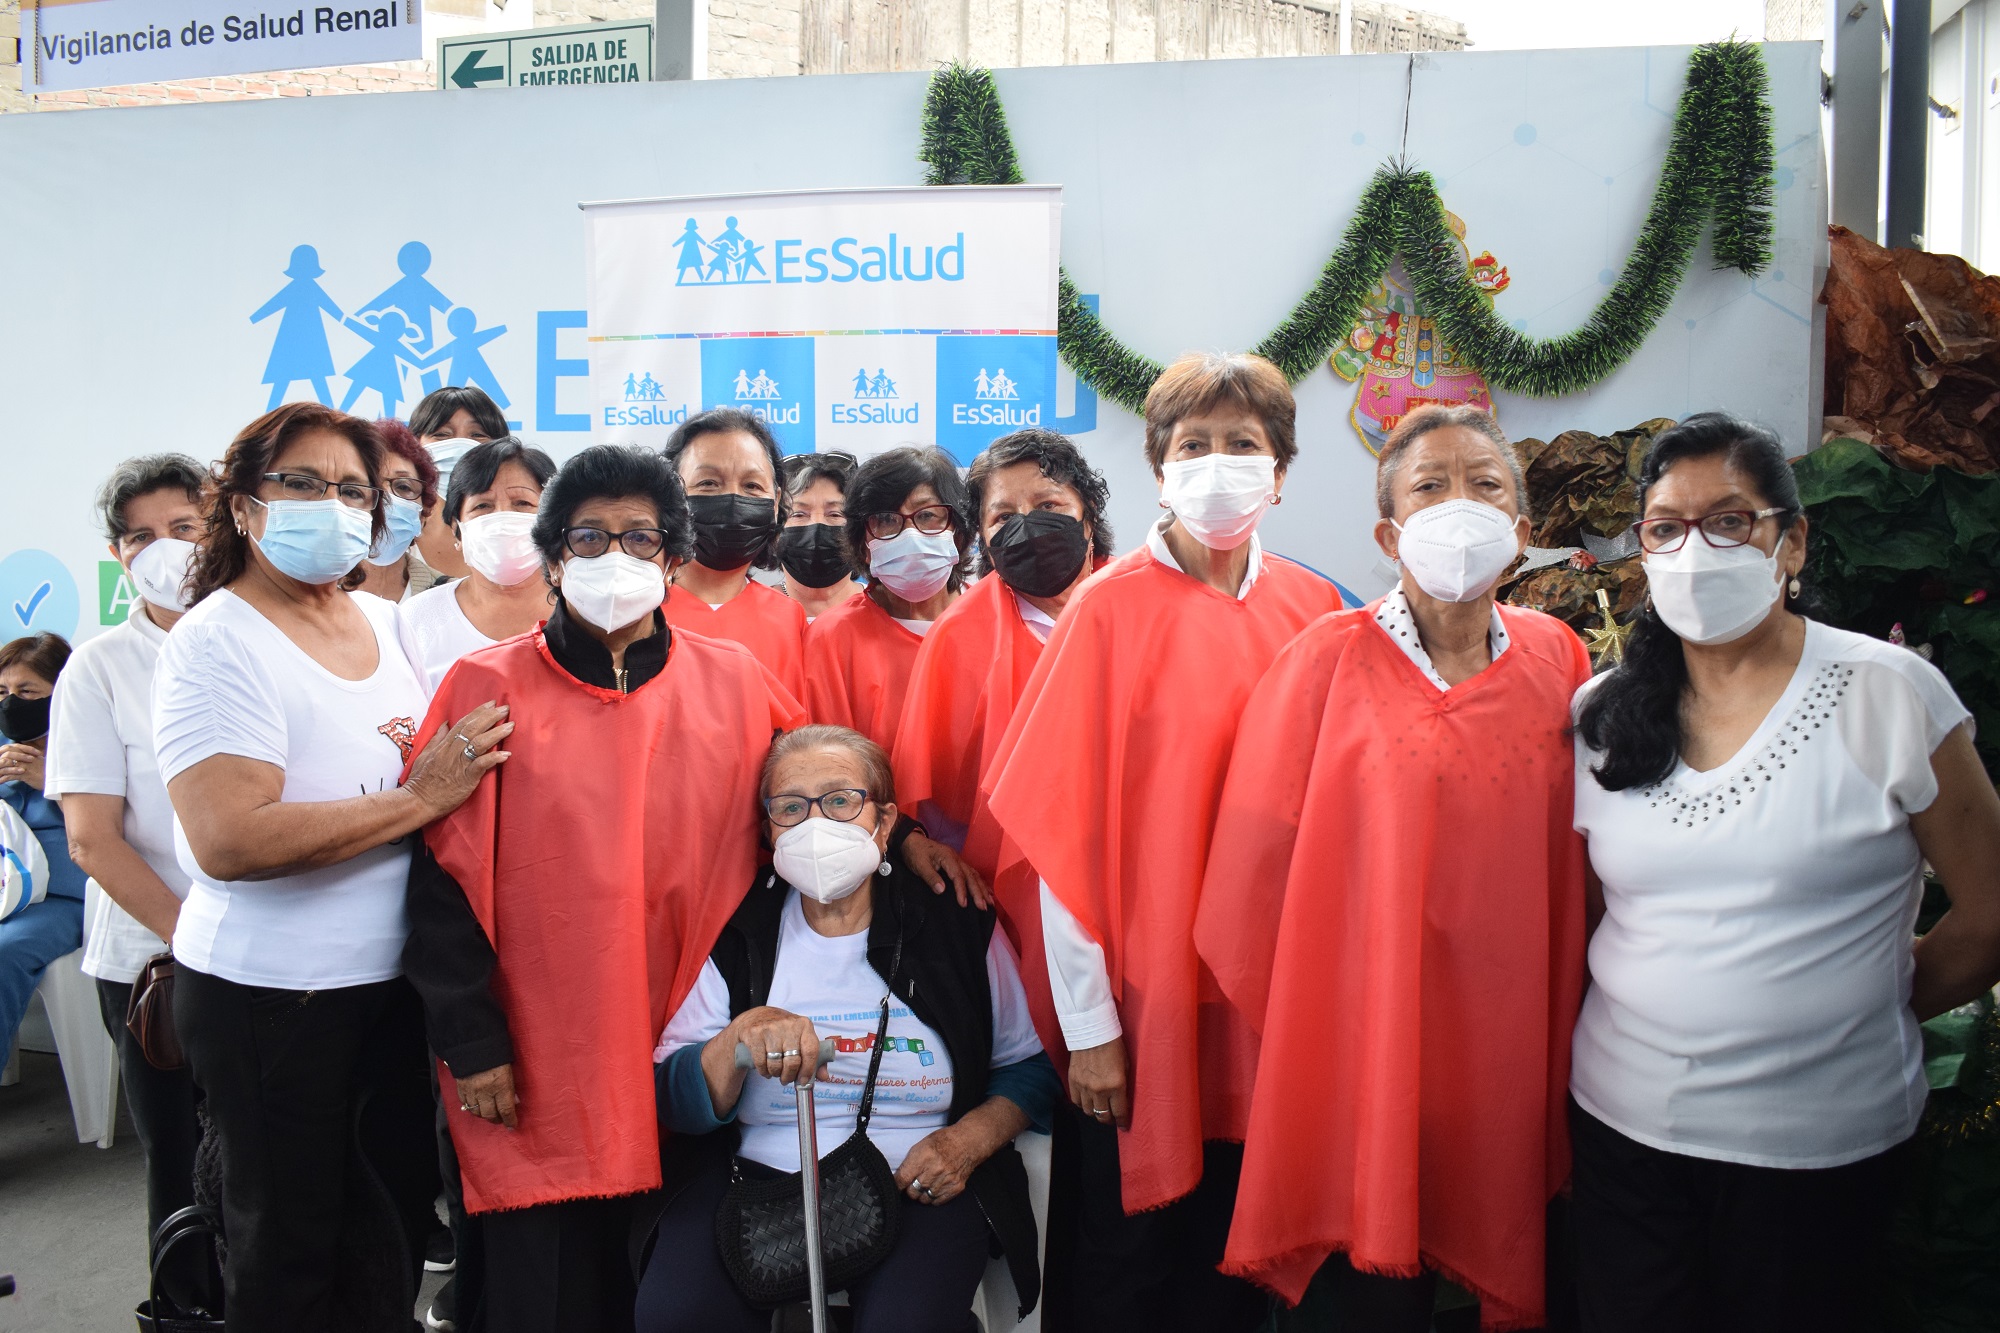 Essalud - A ritmo de villancicos y otros ritmos bailables adultos mayores del coro del hospital Grau celebraron la navidad